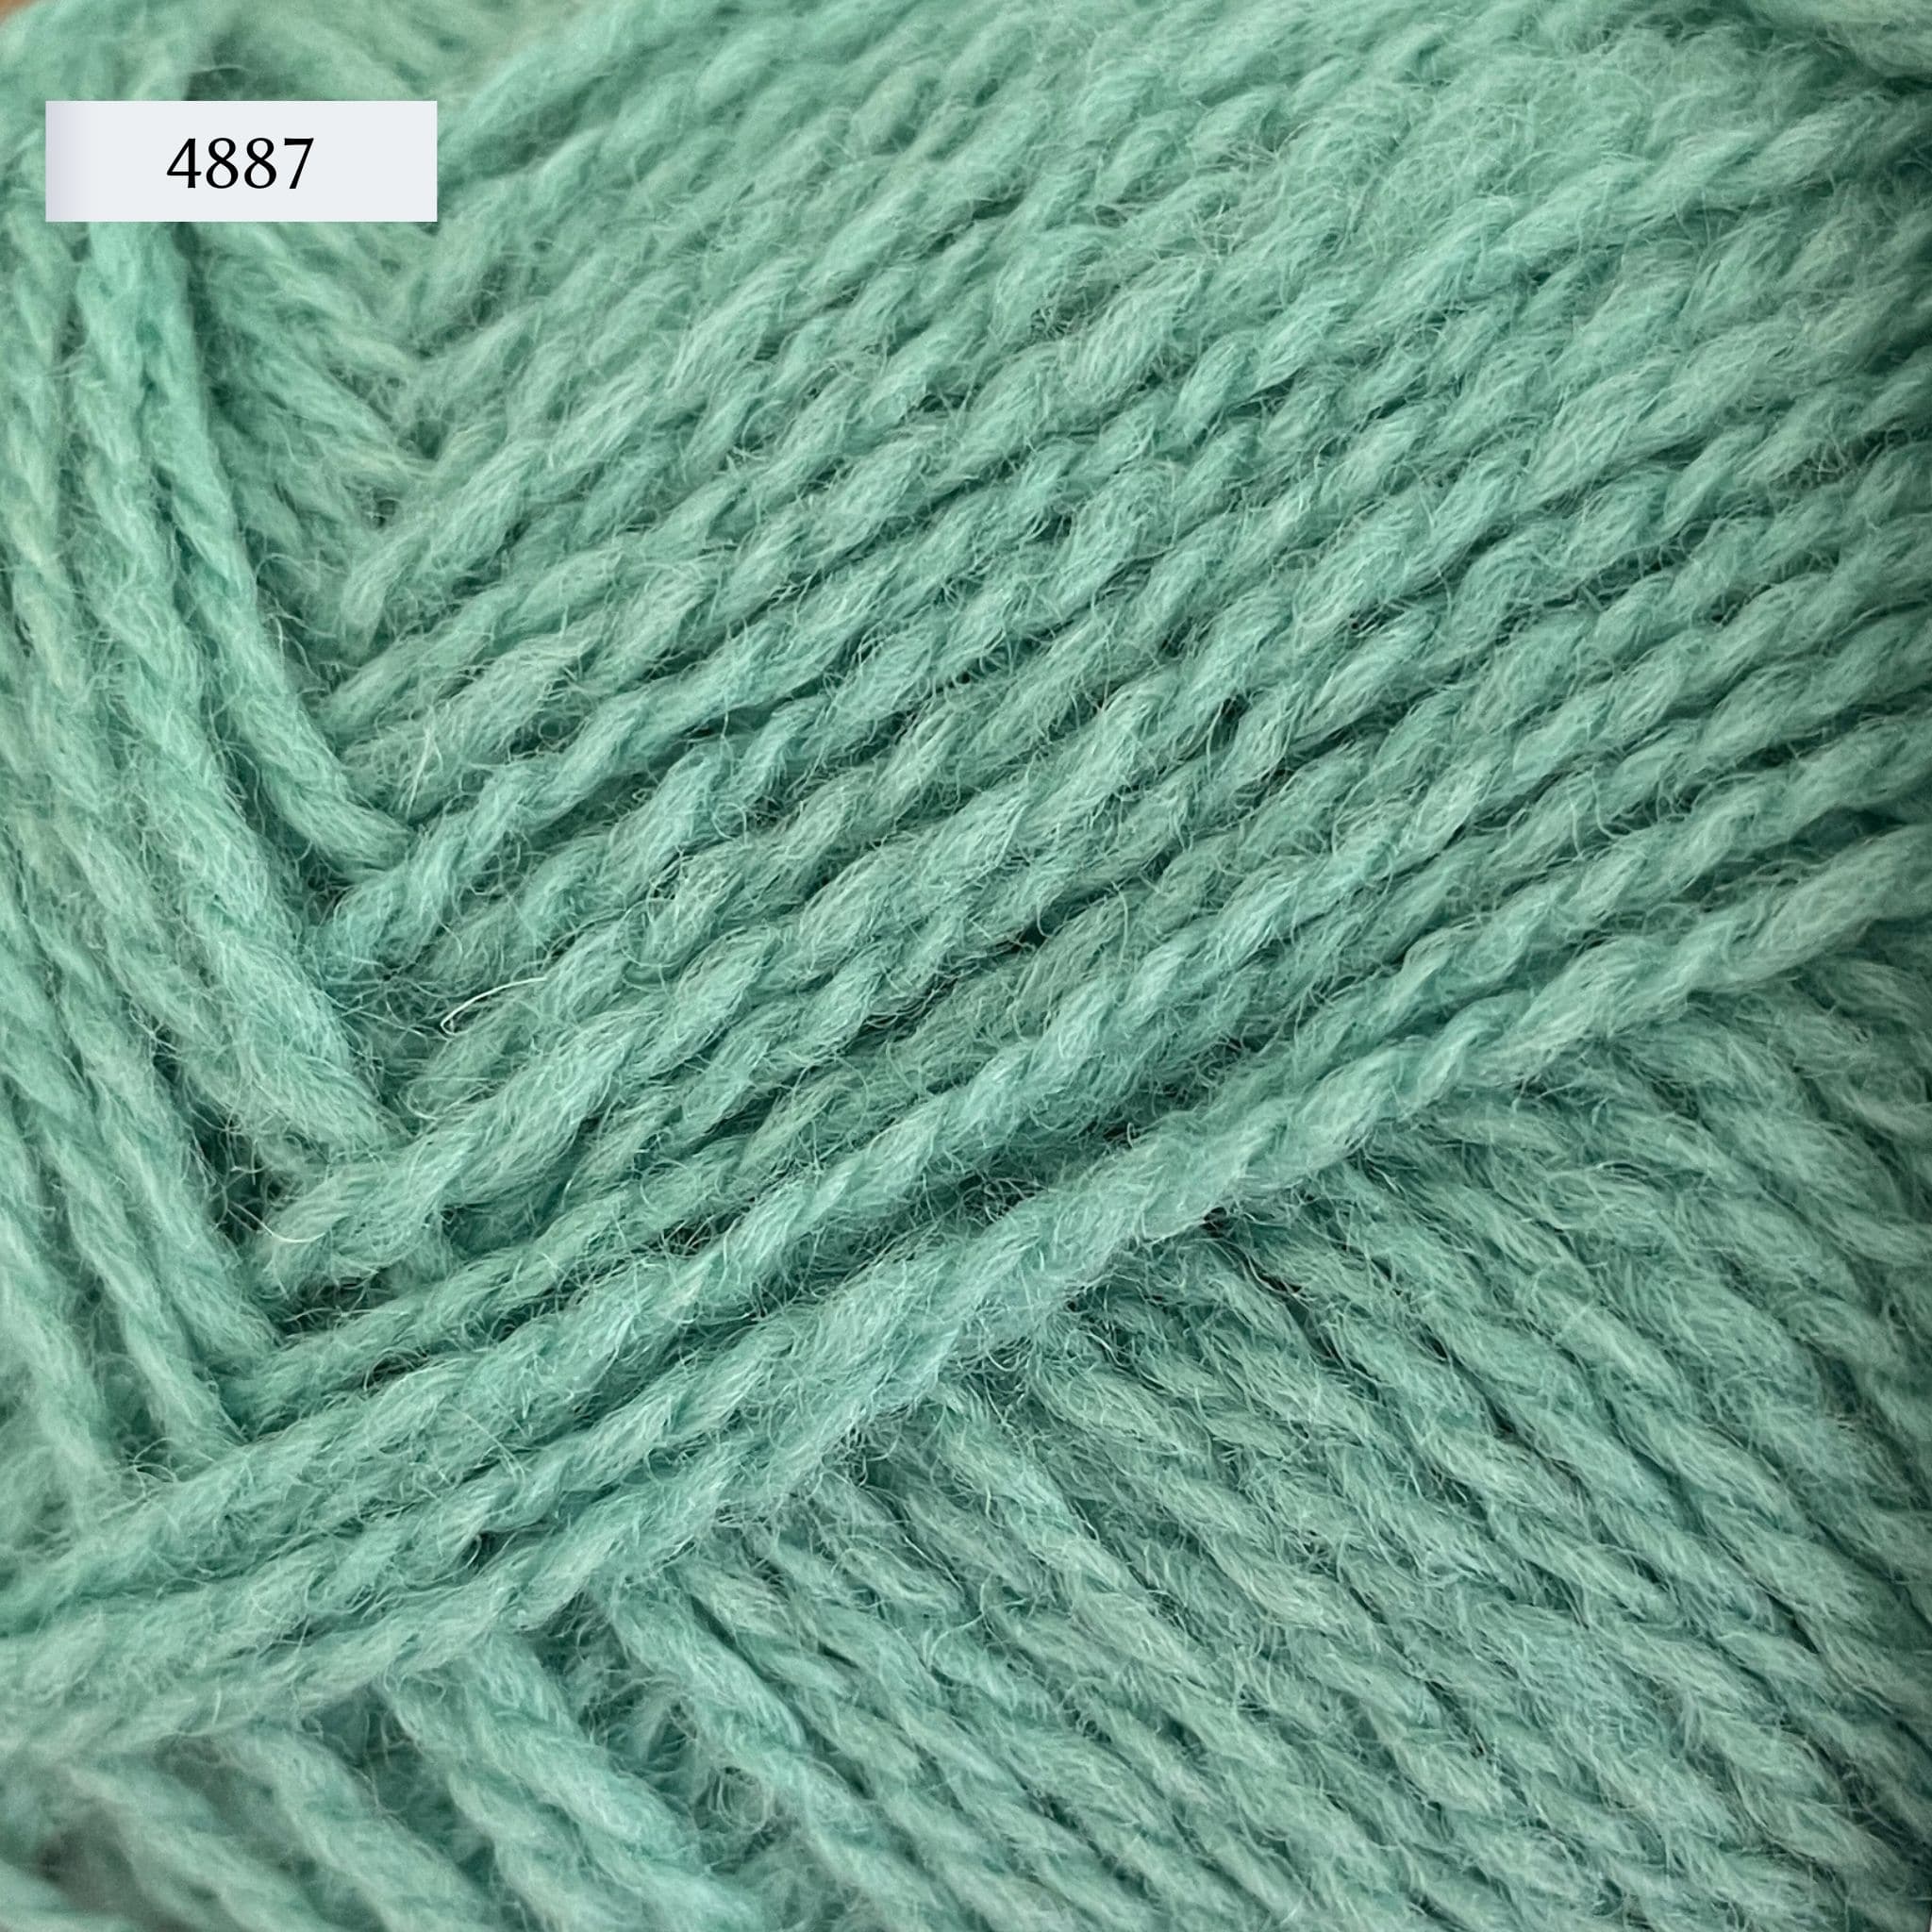 Rauma Finullgarn, a fingering/sport weight yarn, in color 4887, a light aqua green